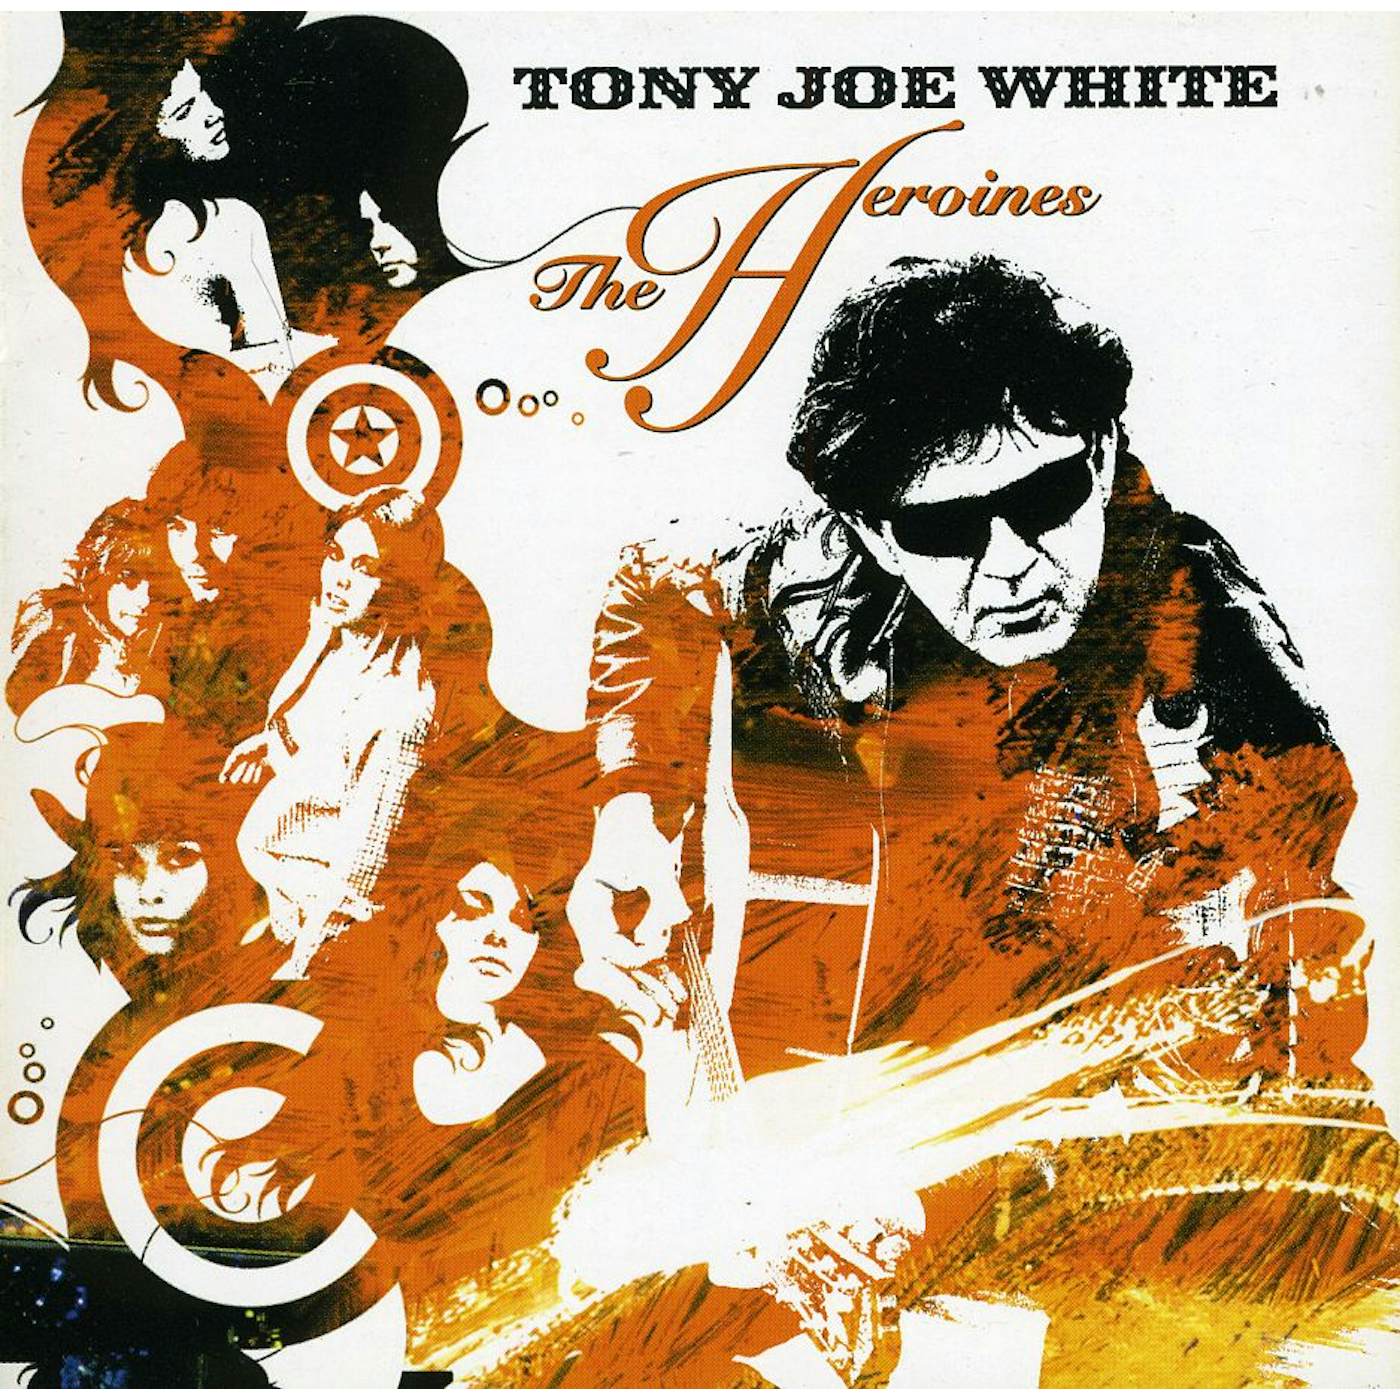 Tony Joe White HEROINES CD